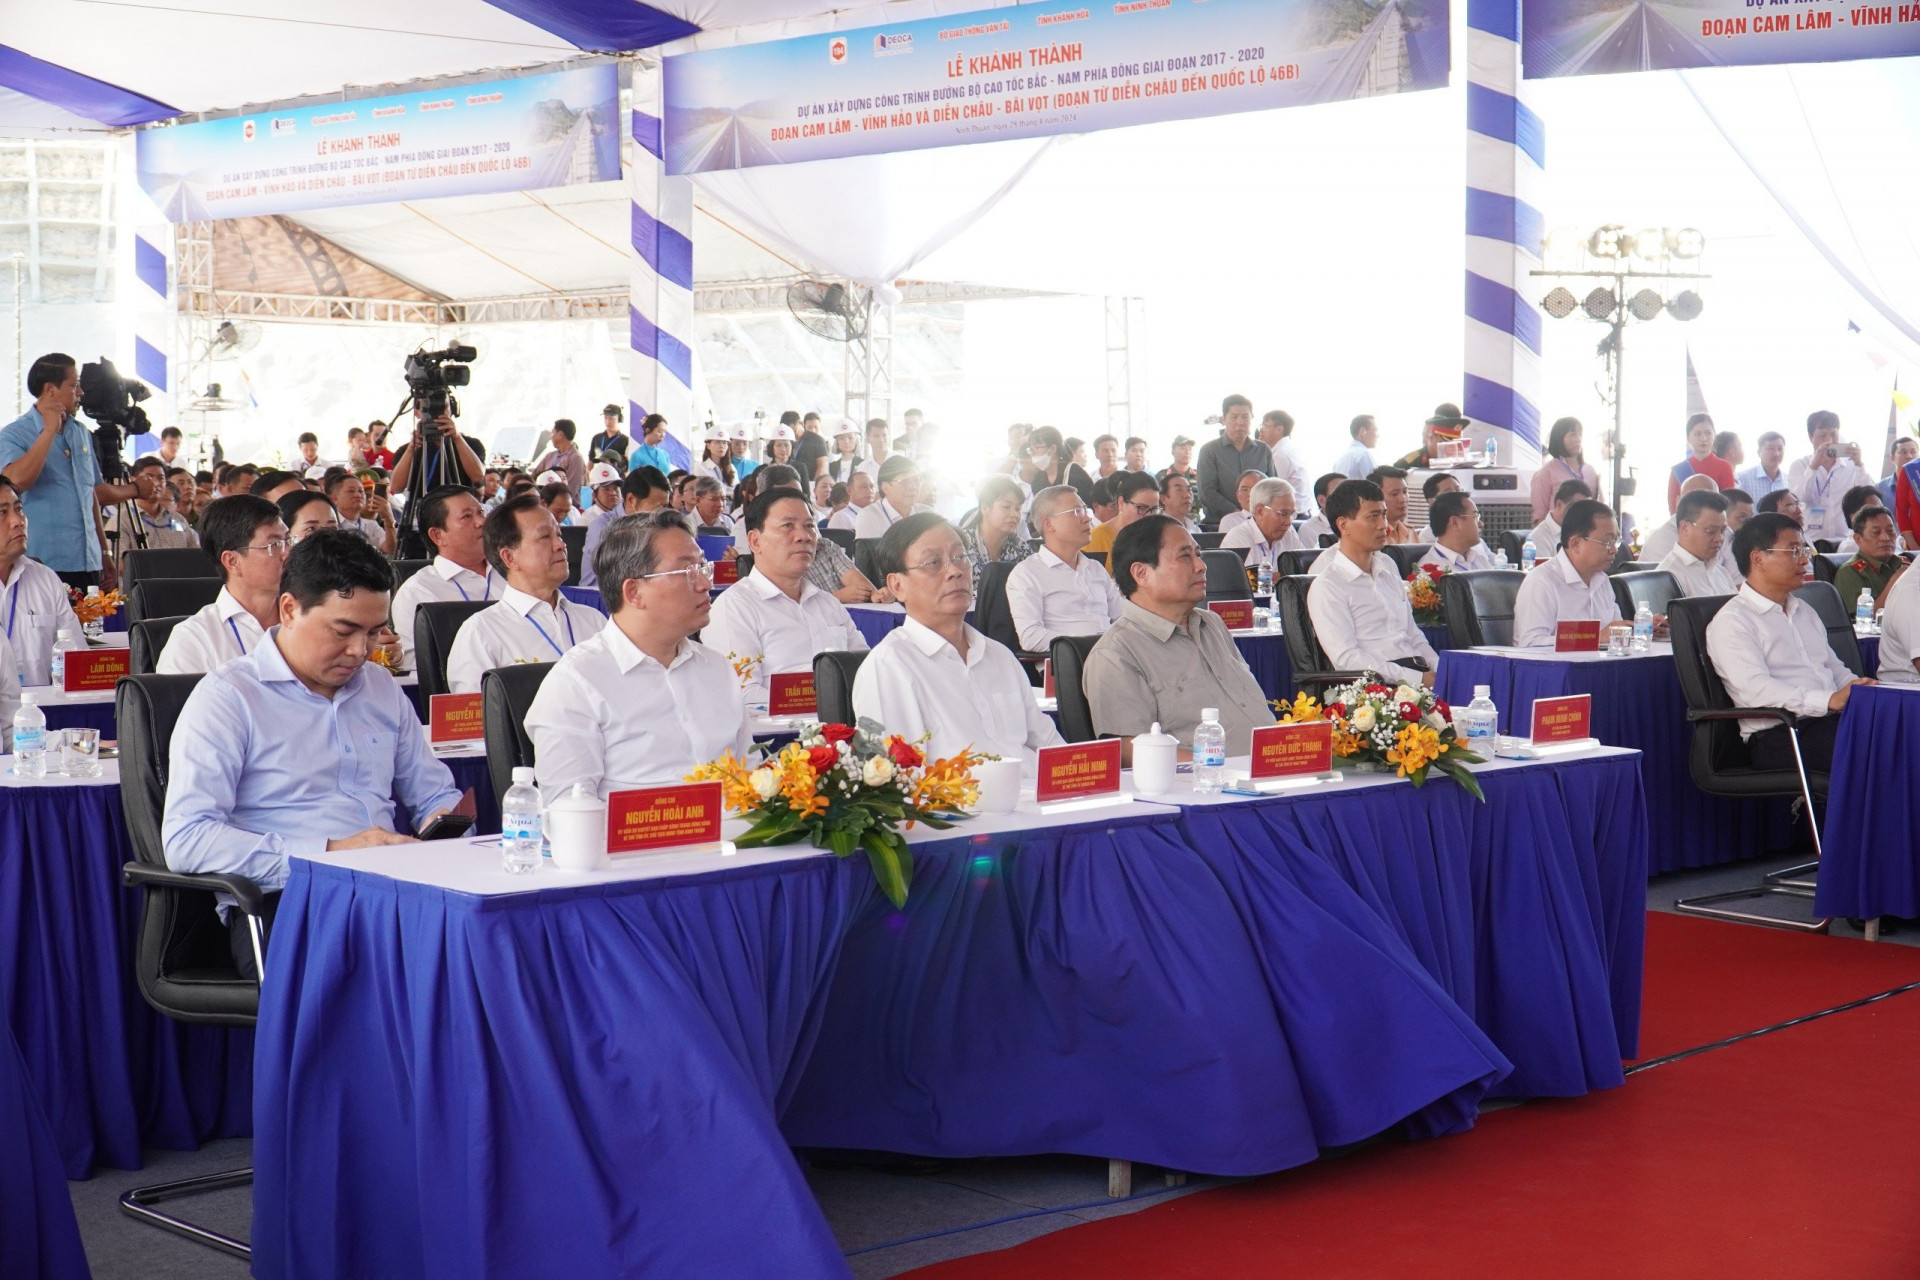 Đồng chí Nguyễn Hải Ninh (thứ 2 từ trái qua) dự lễ khánh thành Cao tốc Cam Lâm - Vĩnh Hảo